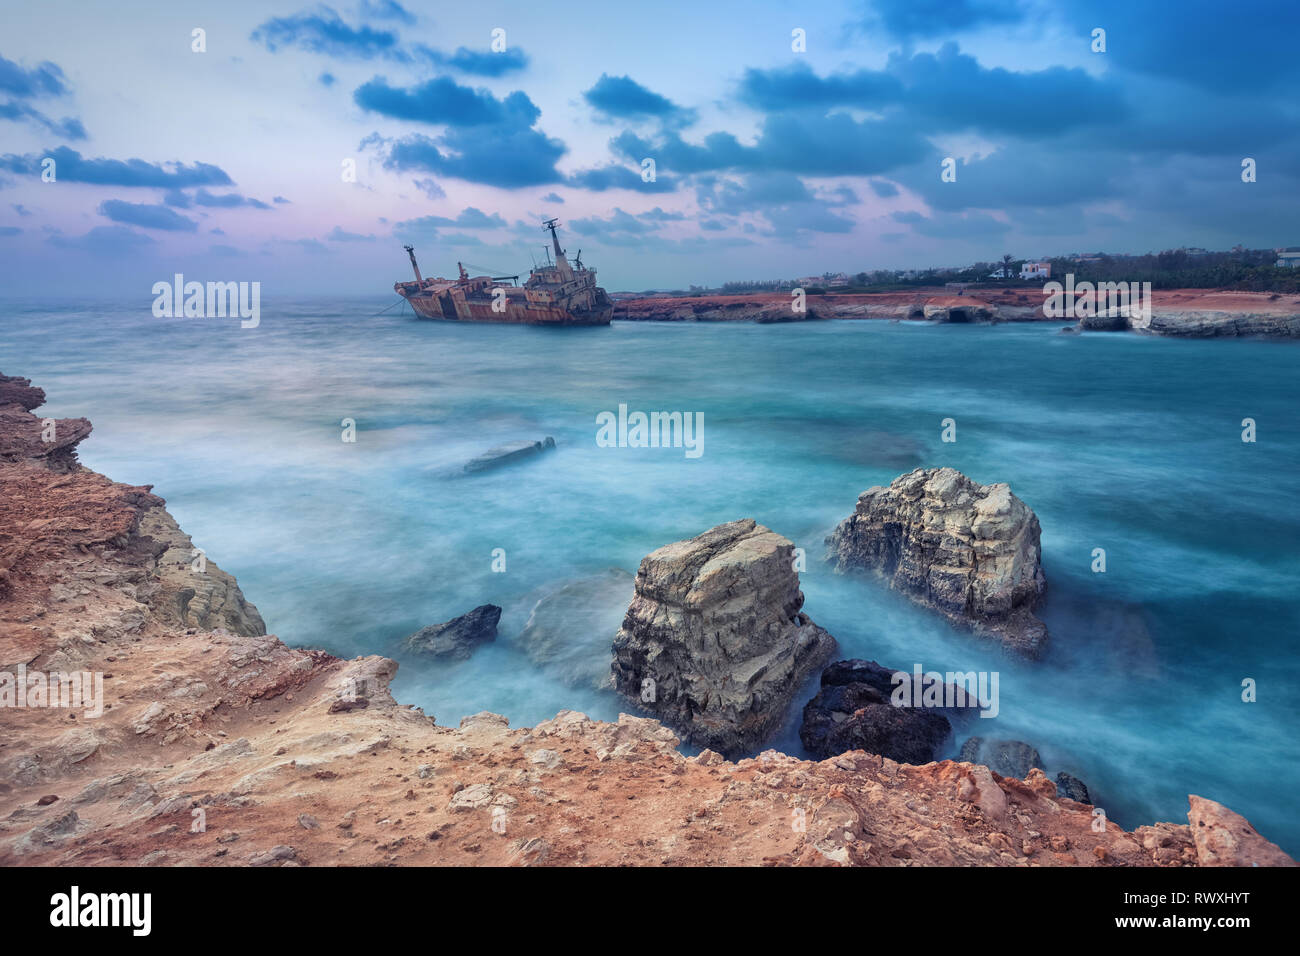 Le rocce in mare con navi abbandonate su sfondo vicino a Paphos, Cipro (con HDR-effetto) Foto Stock